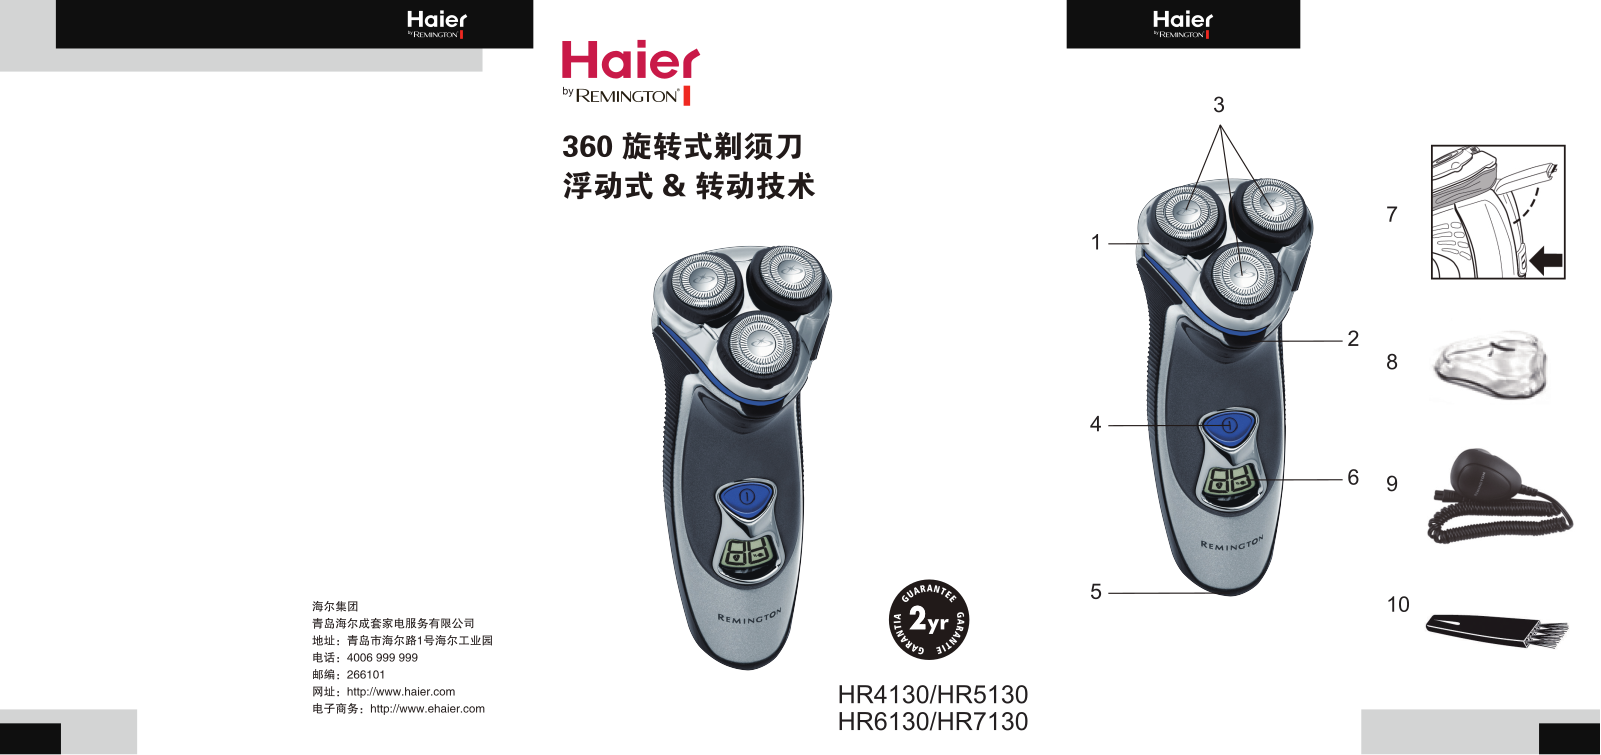 Haier HR4130, HR5130, HR6130, HR7130 User Manual